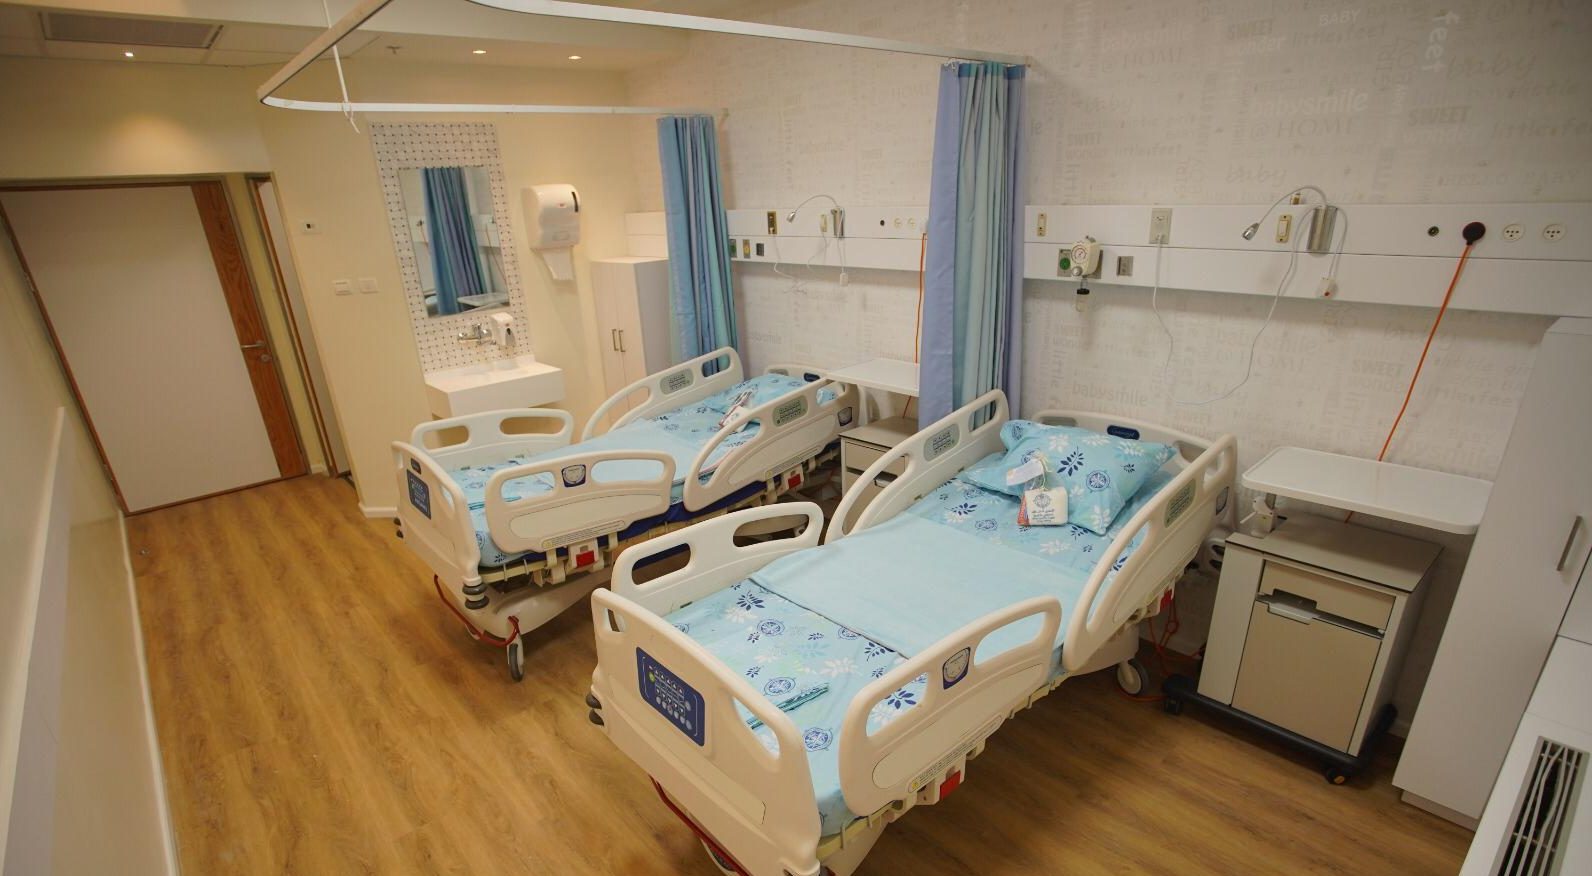 התחלת אכלוס היולדות במחלקת הנשים והיולדות החדישה ביותר בנצרת ואזור הצפון, בבית החולים נצרת- האנגלי